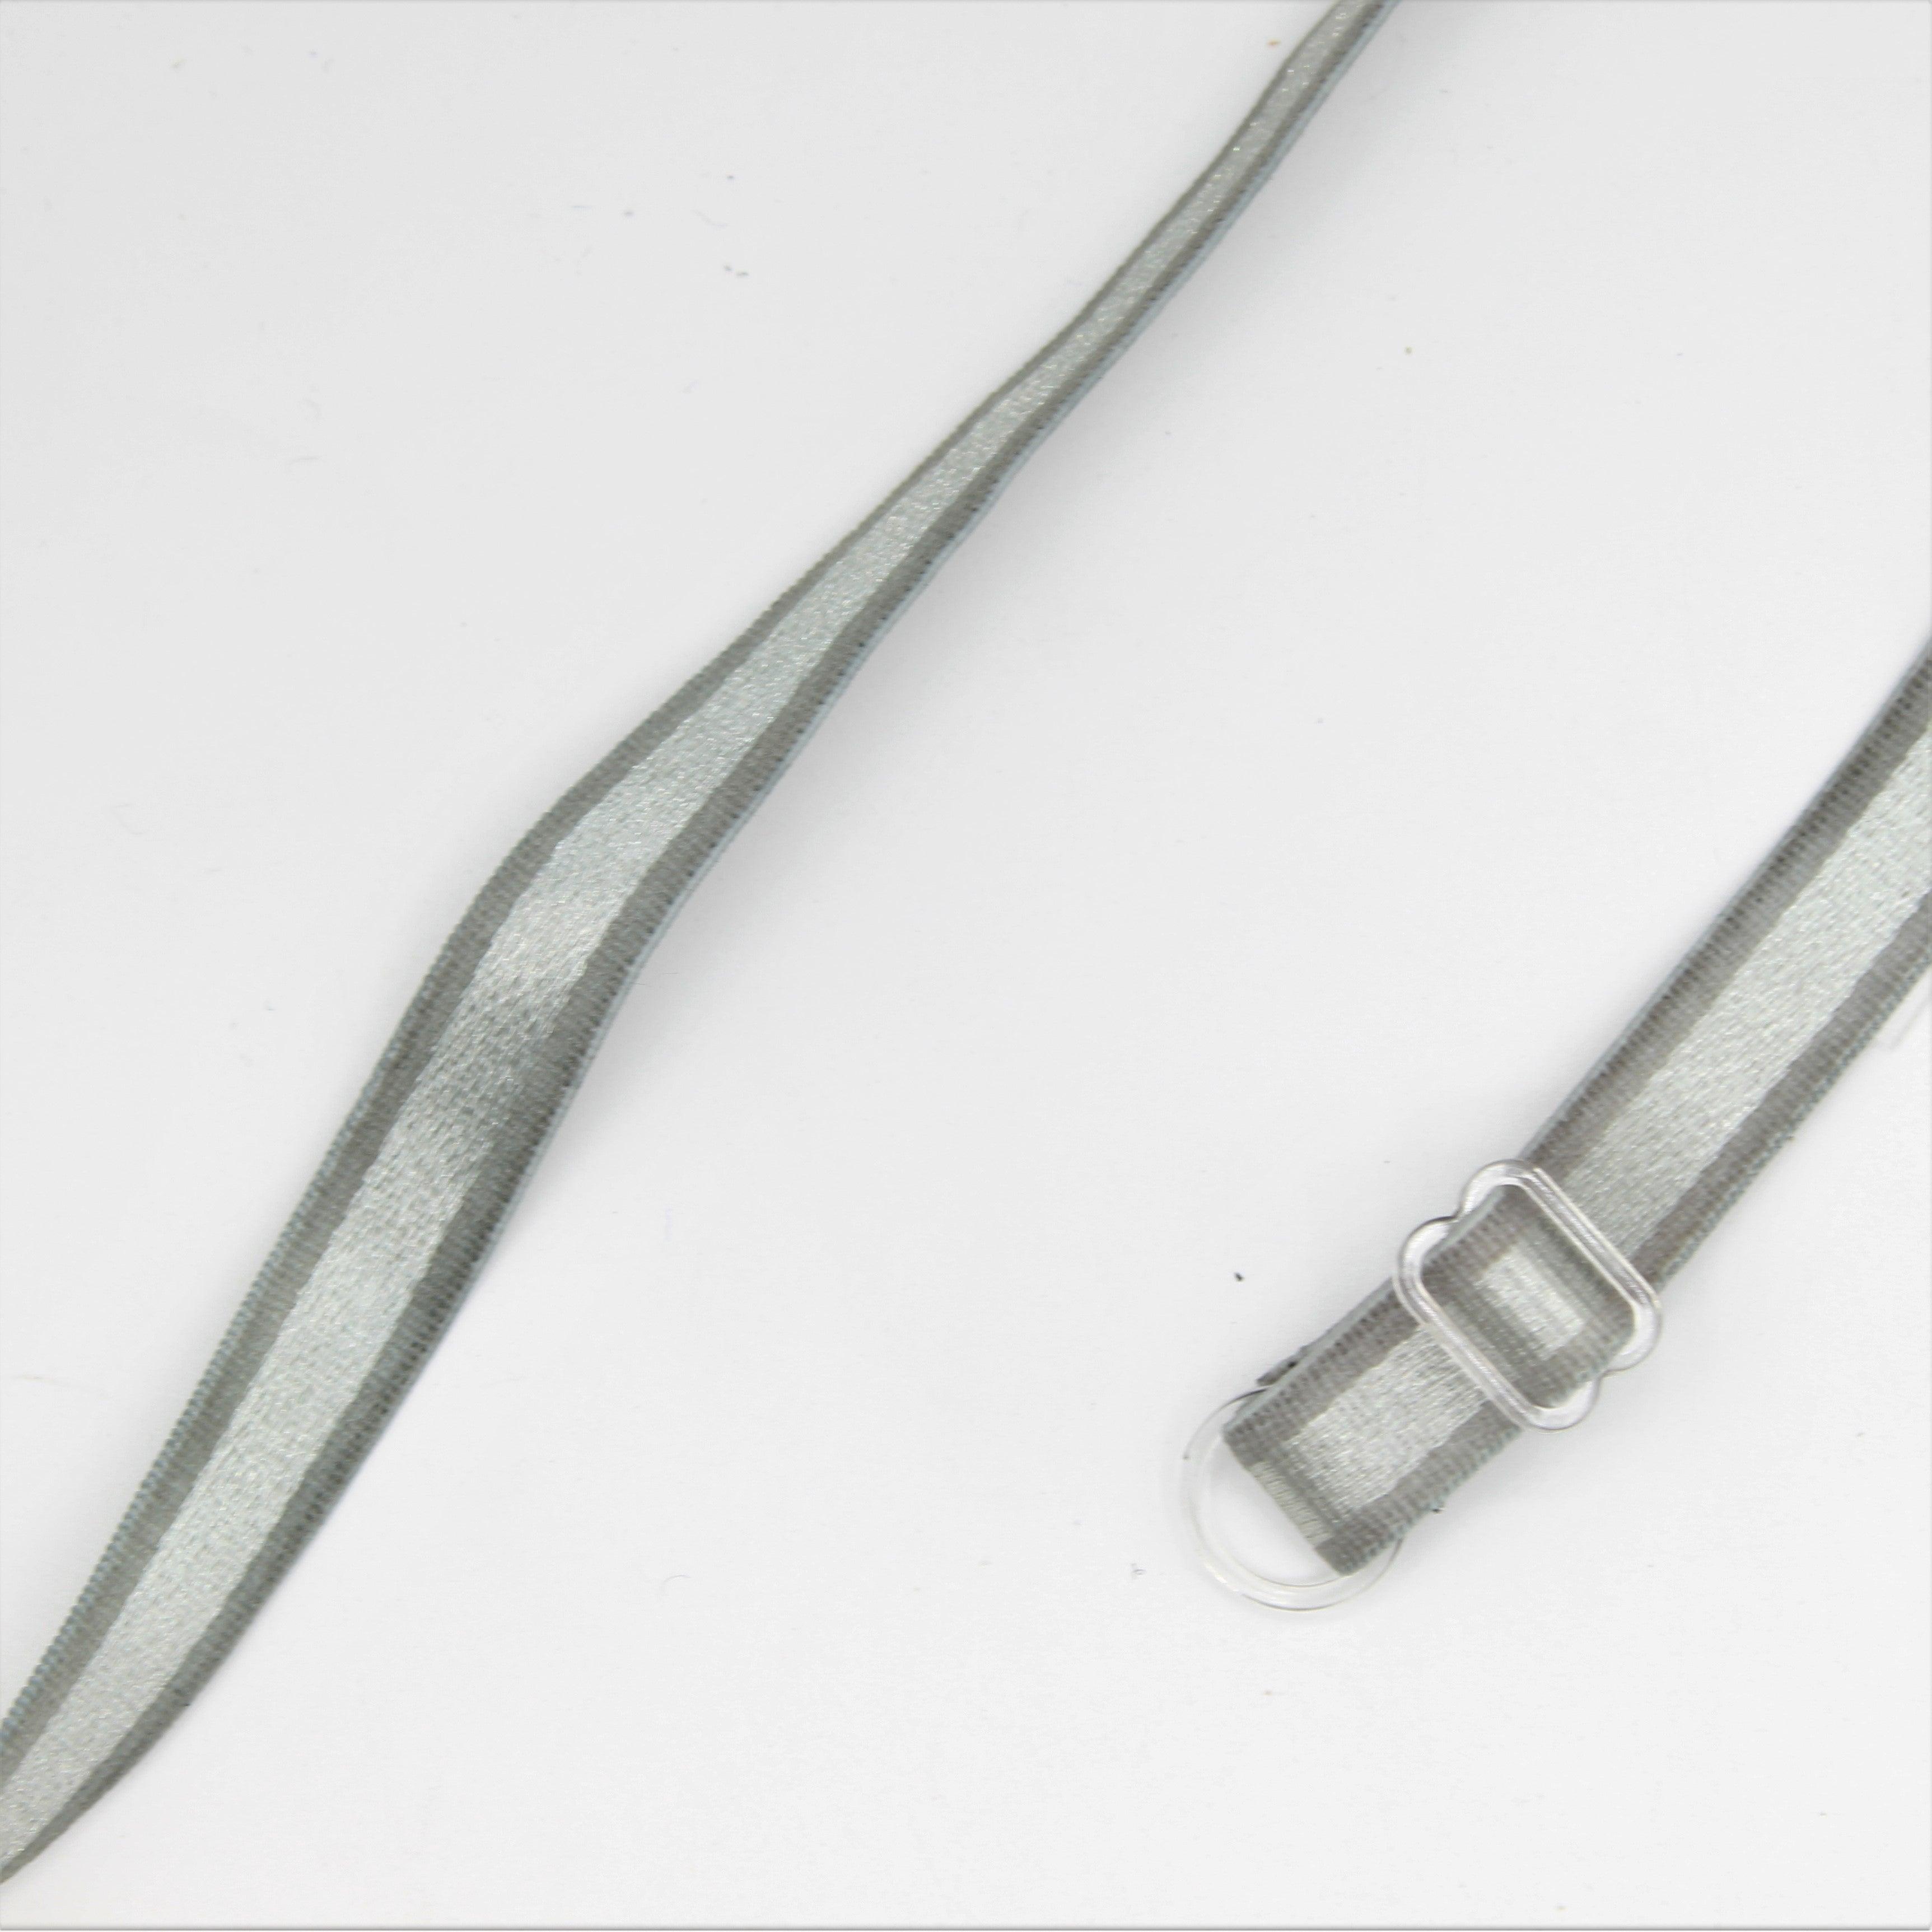 2 Pairs of Gray Non-Slip Adjustable Plastic Hook Bra Straps Elastic 38x1 cm - ACCESSOIRES LEDUC